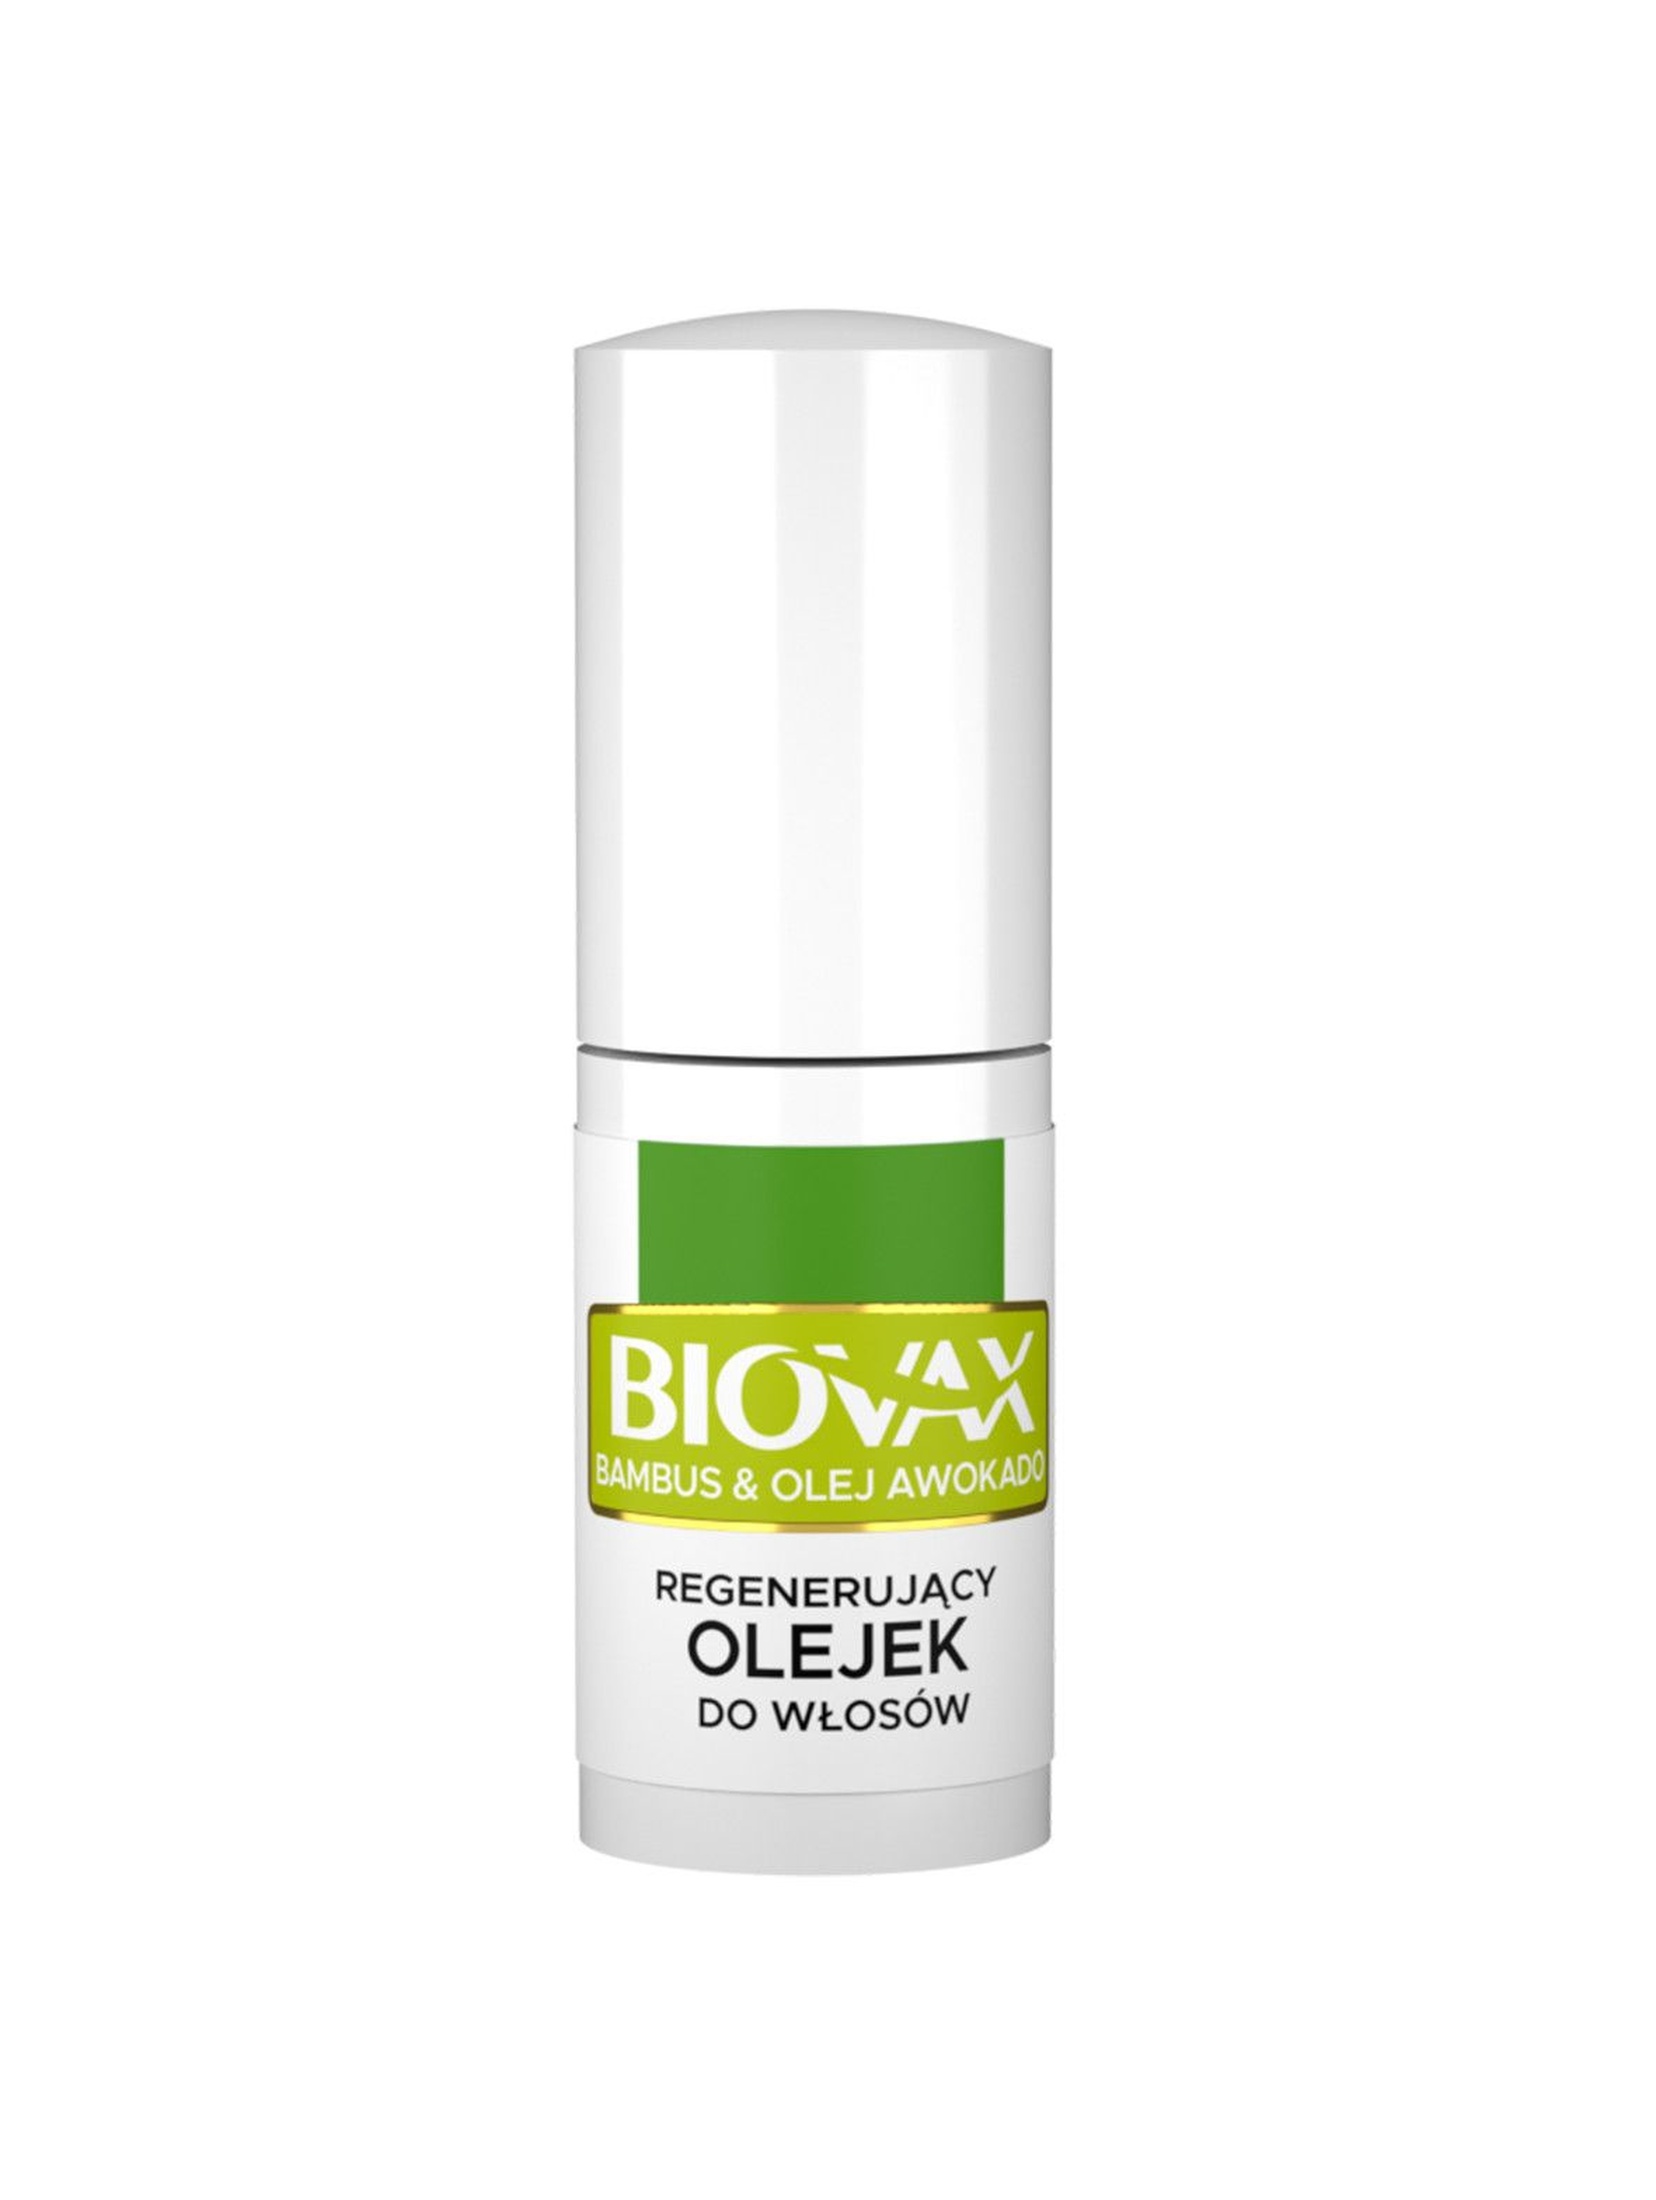 Biovax Eliksir-olejek do włosów BAMBUS, OLEJ AVOCADO 15ml